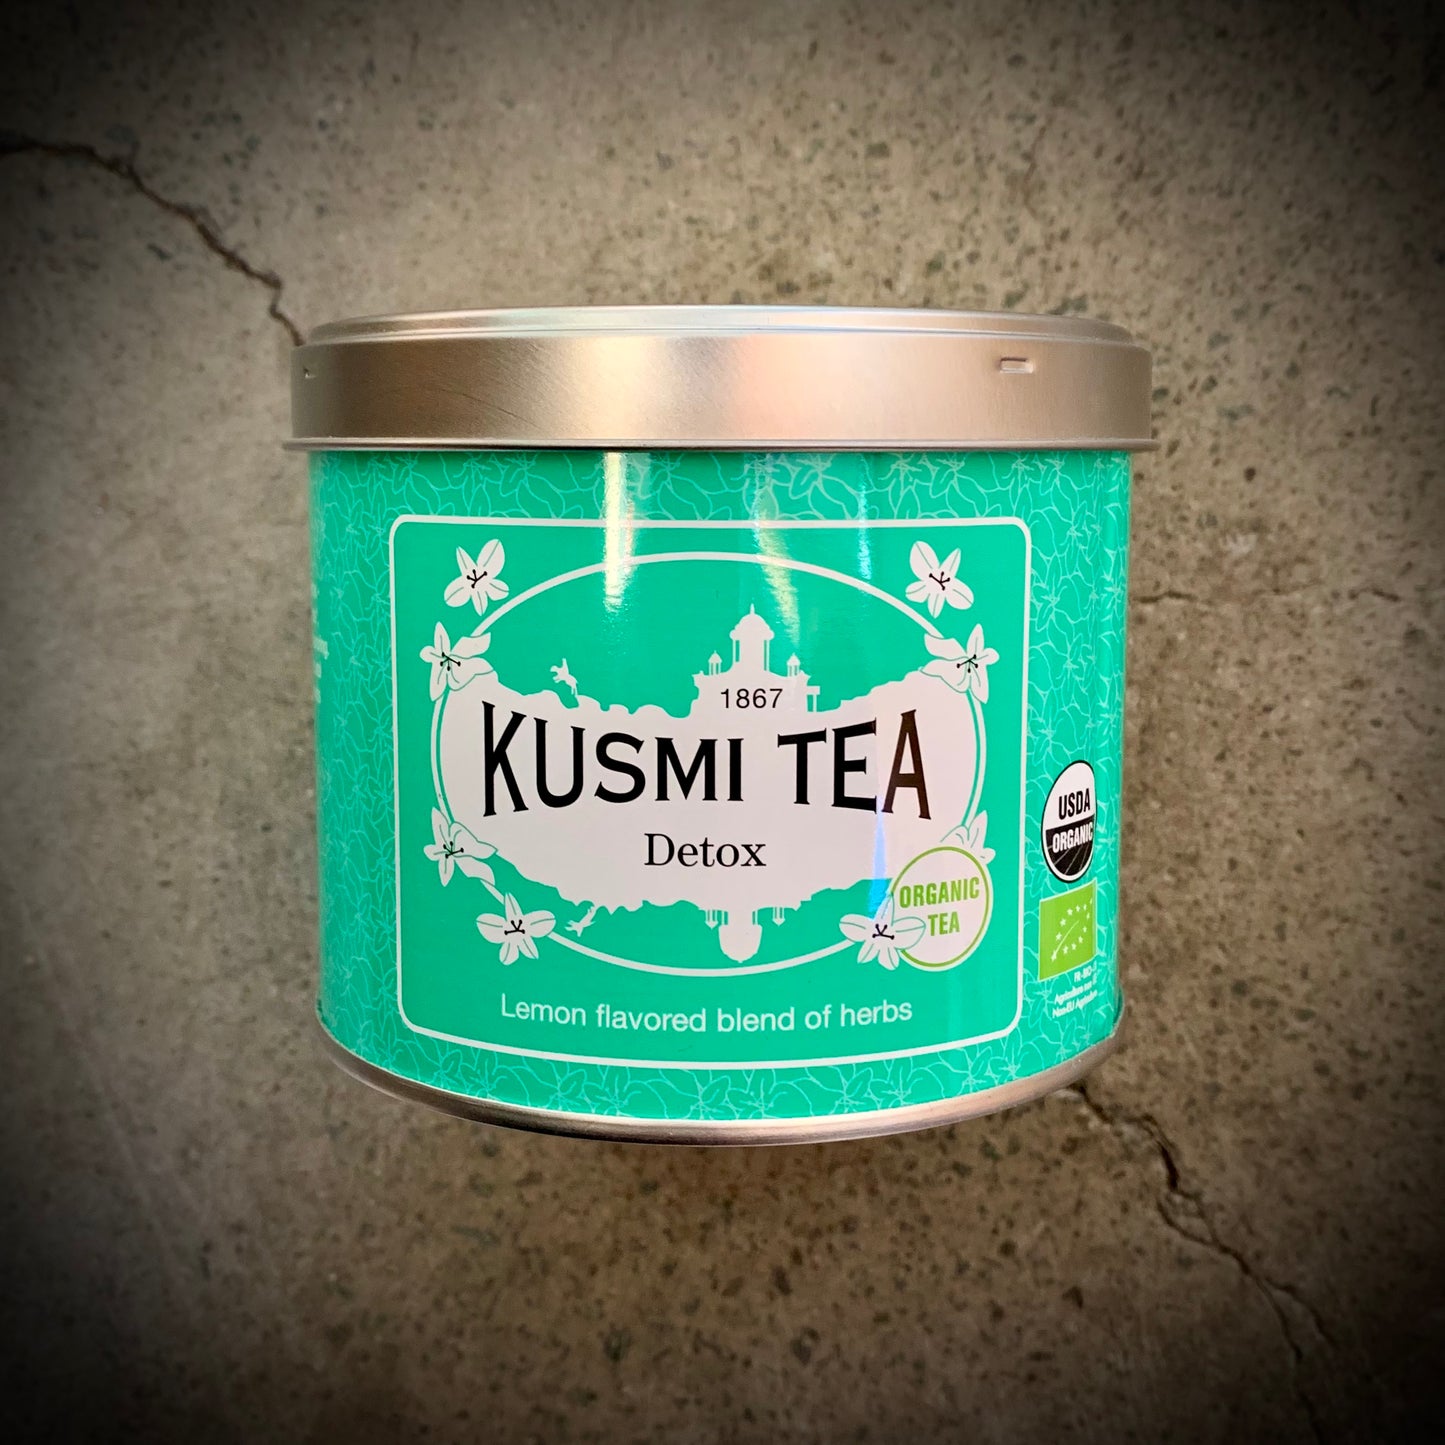 Kusmi, Detox, Organic tea - 100g tin